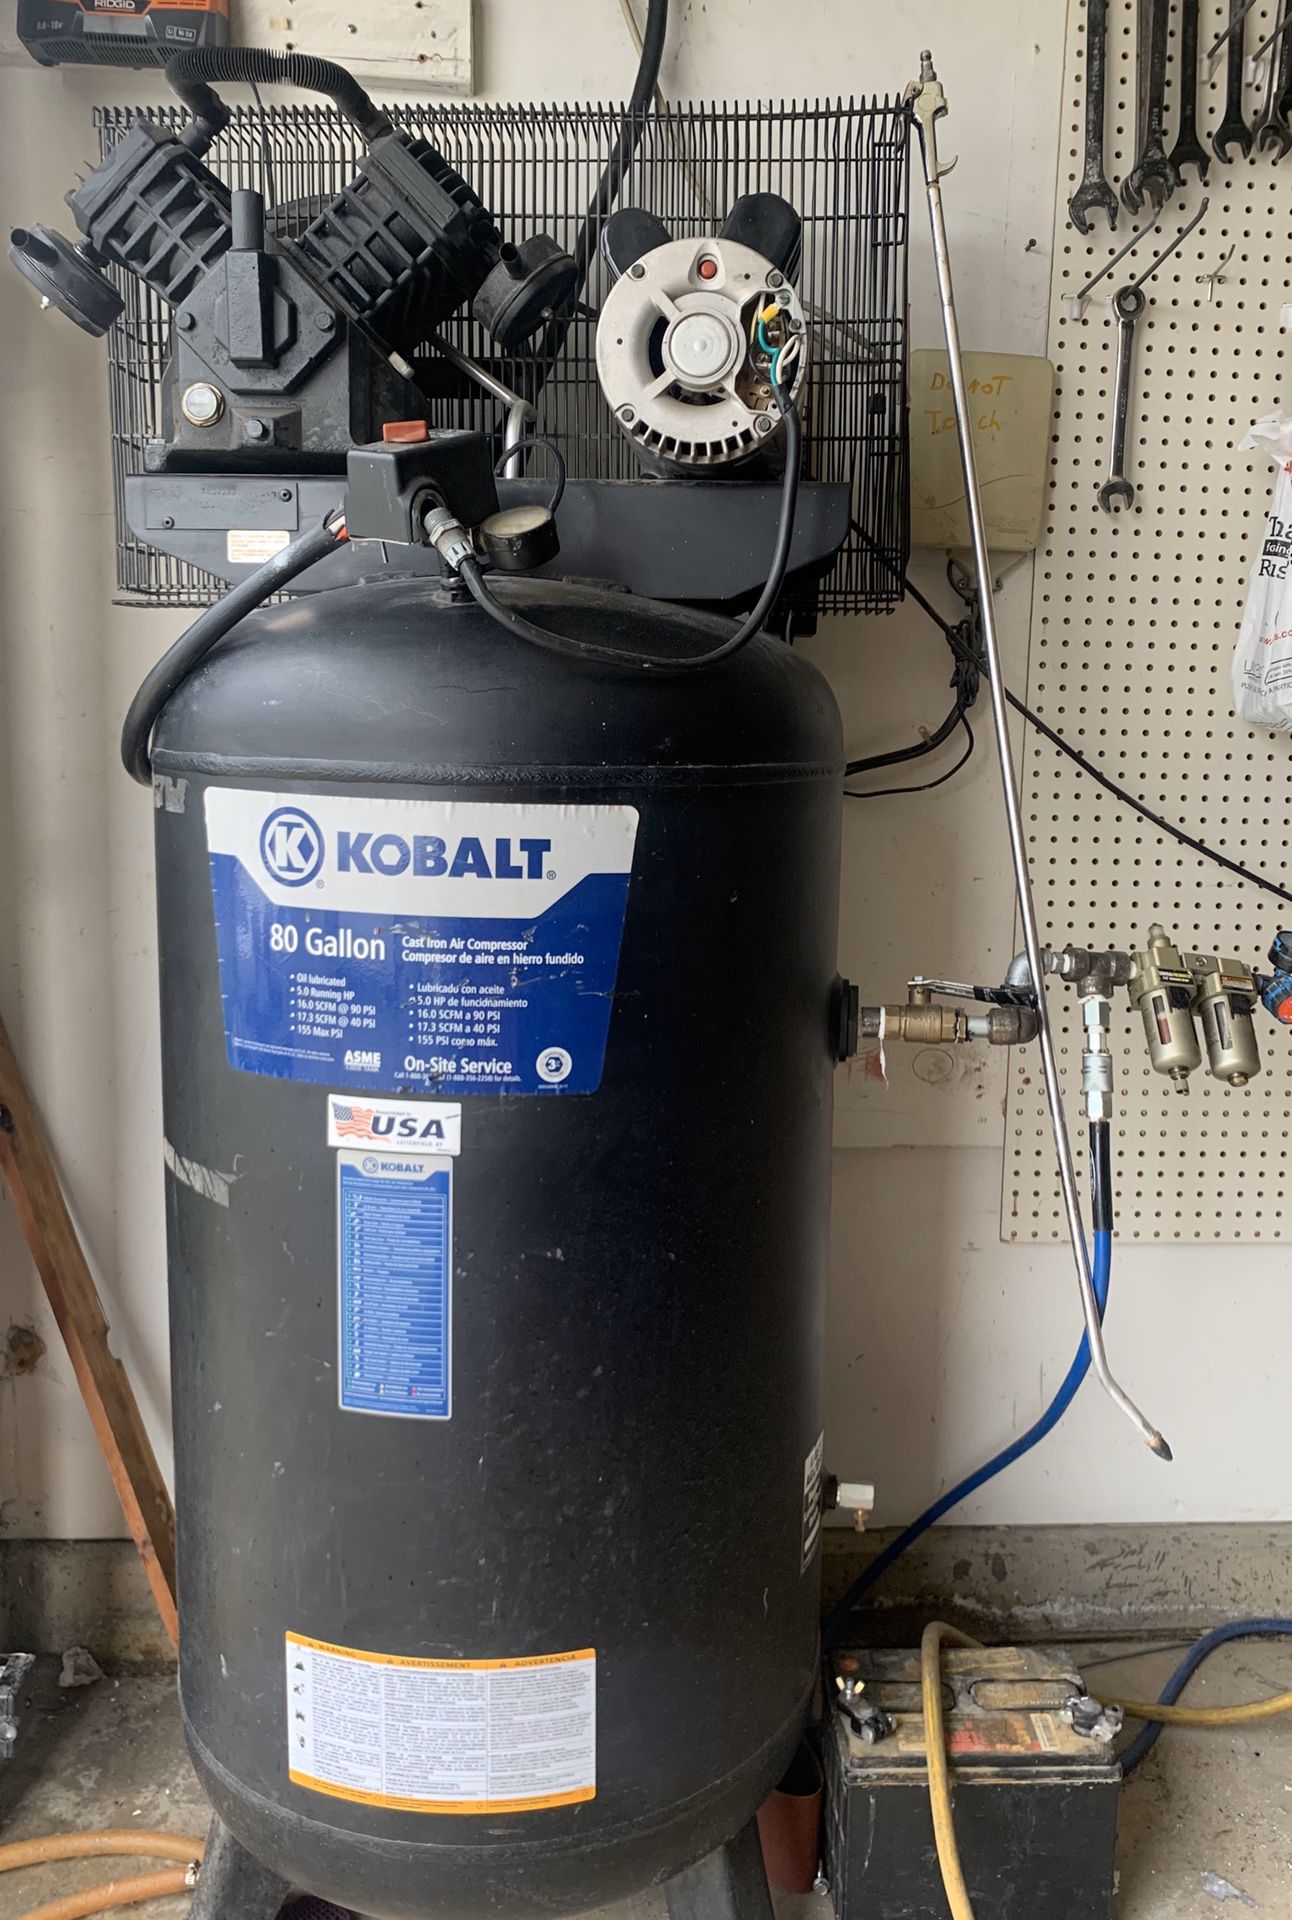 Kobalt 80 gallon, 5 horsepower air compressor